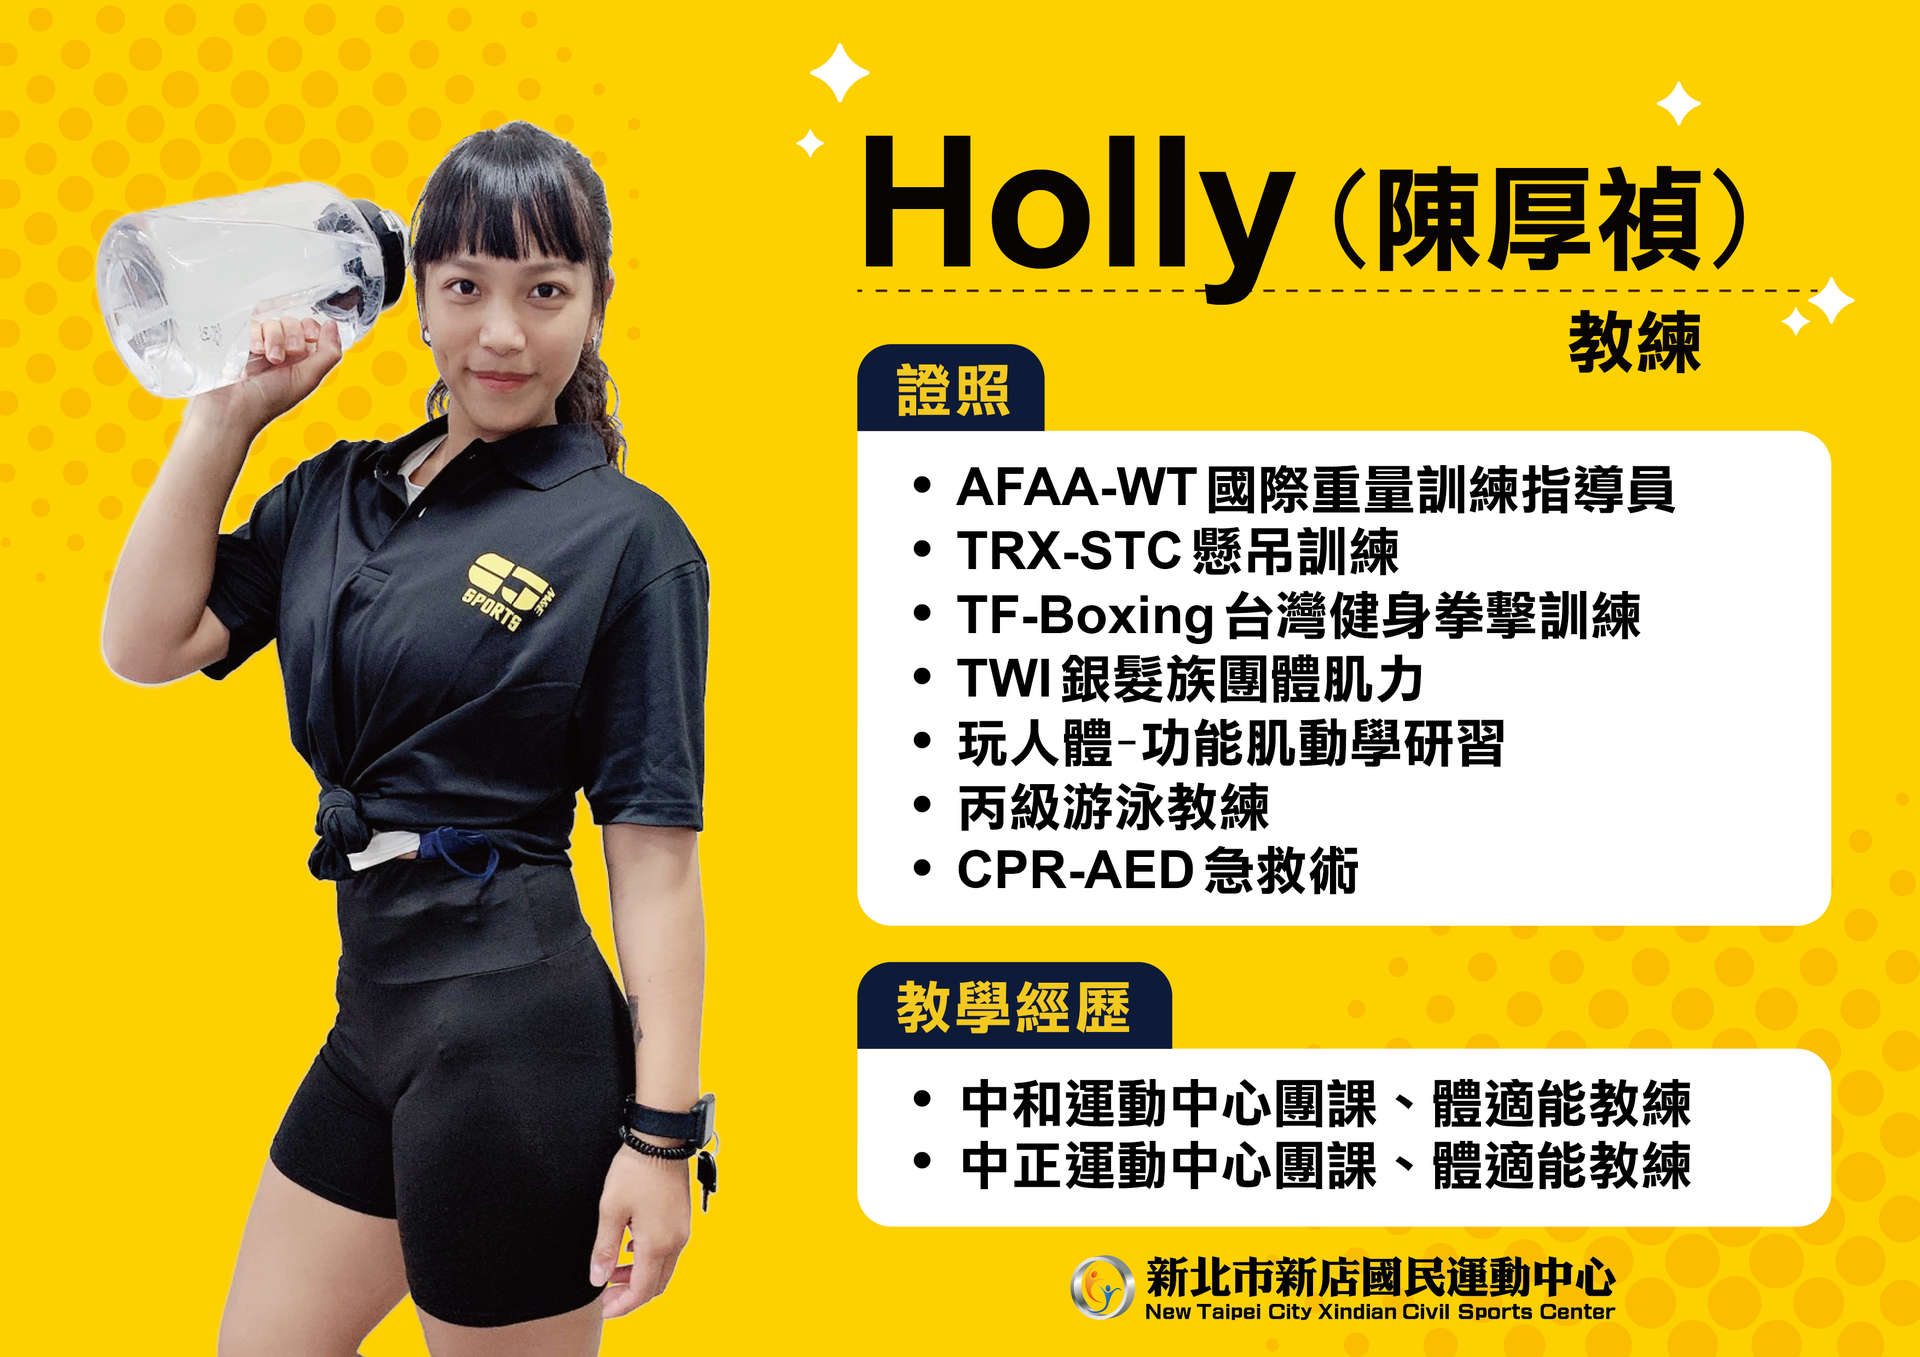 陳厚禎(Holly)教練照片預覽